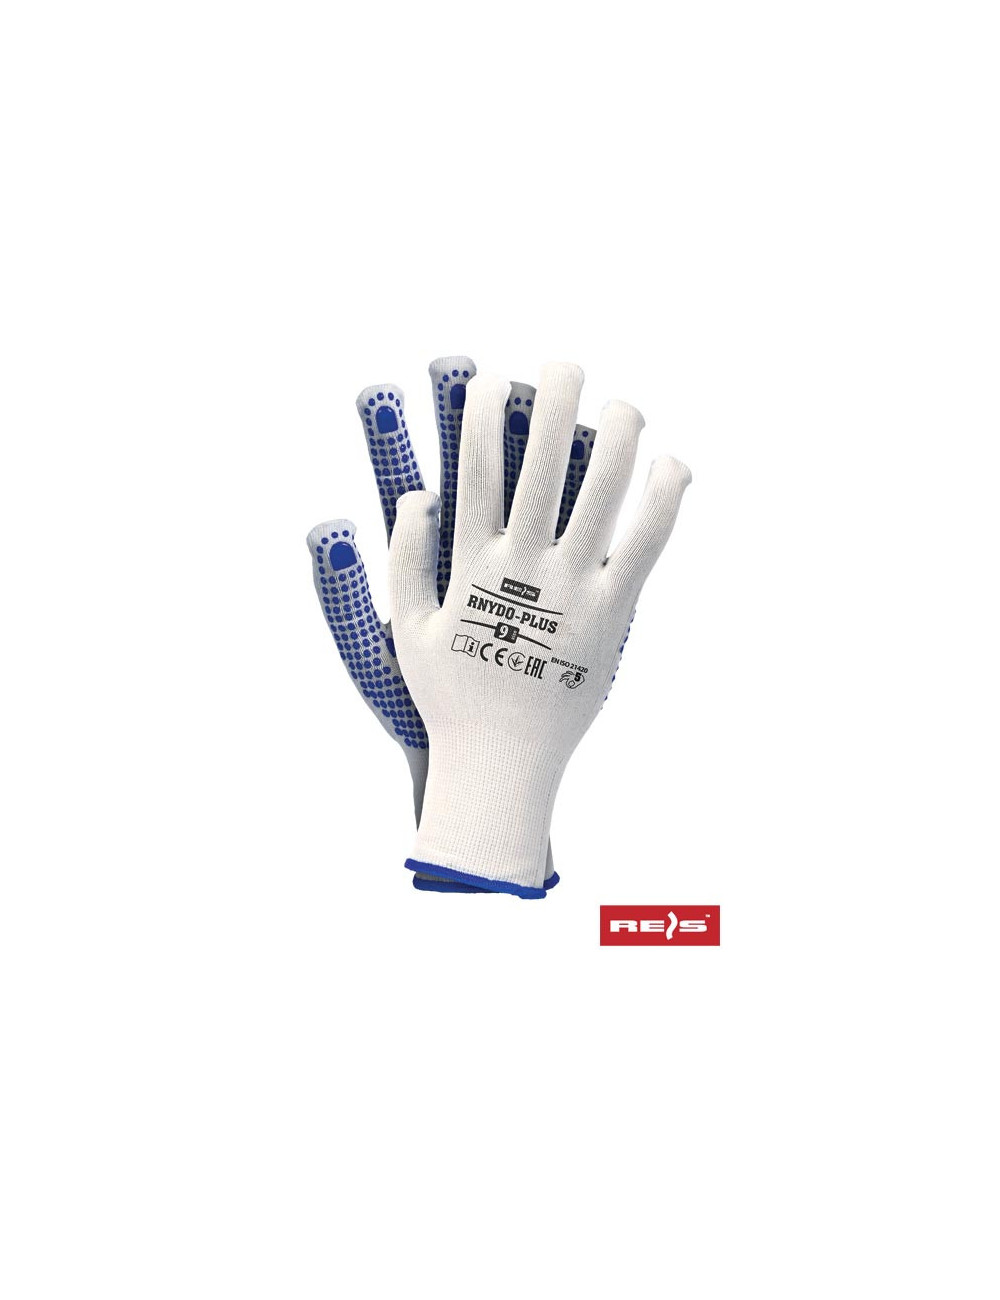 Protective gloves rnydo-plus wn white-blue Reis